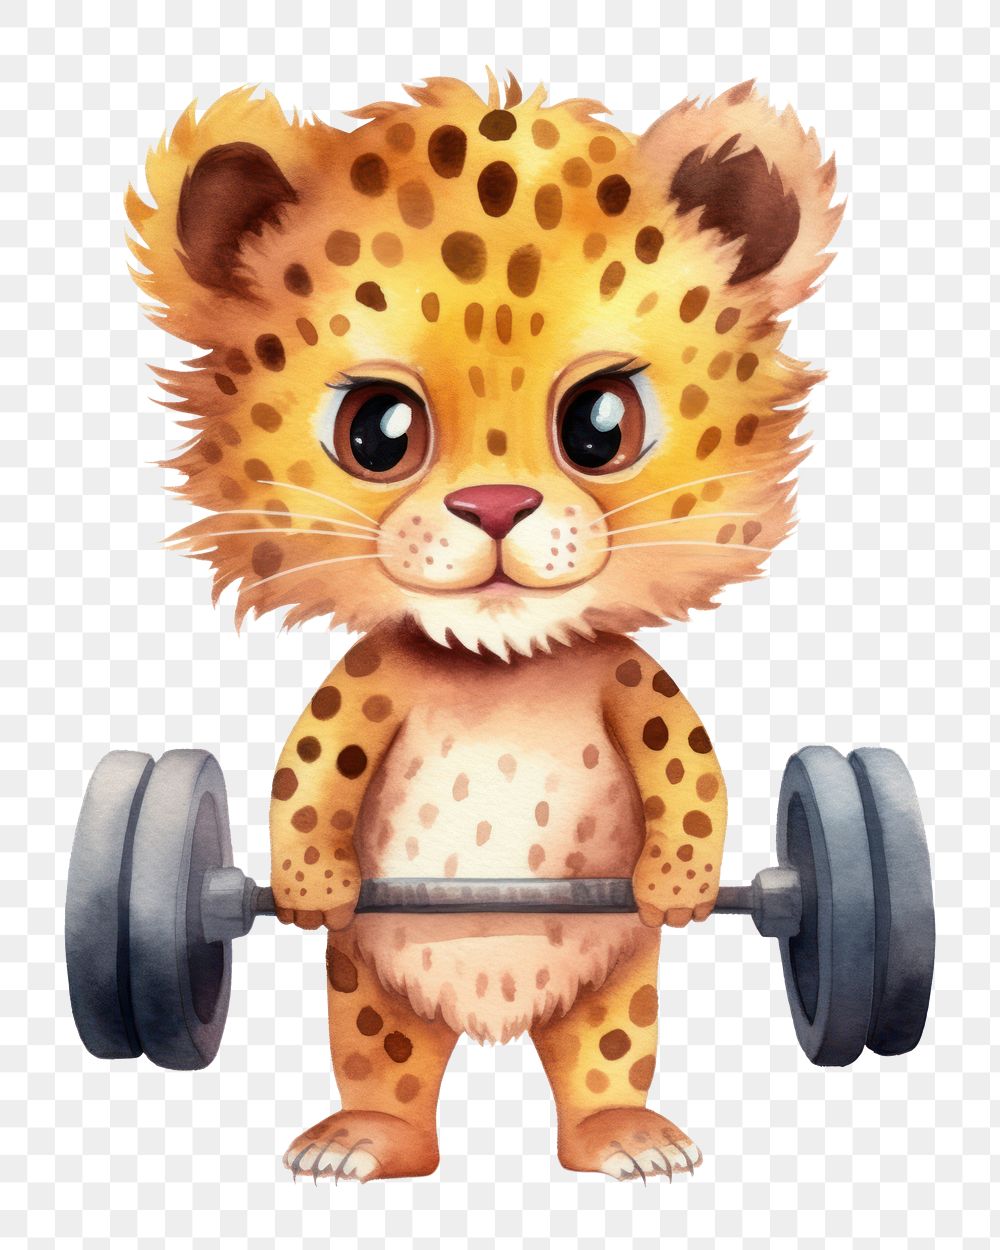 PNG Cheetah Gym cheetah cartoon mammal. AI generated Image by rawpixel.